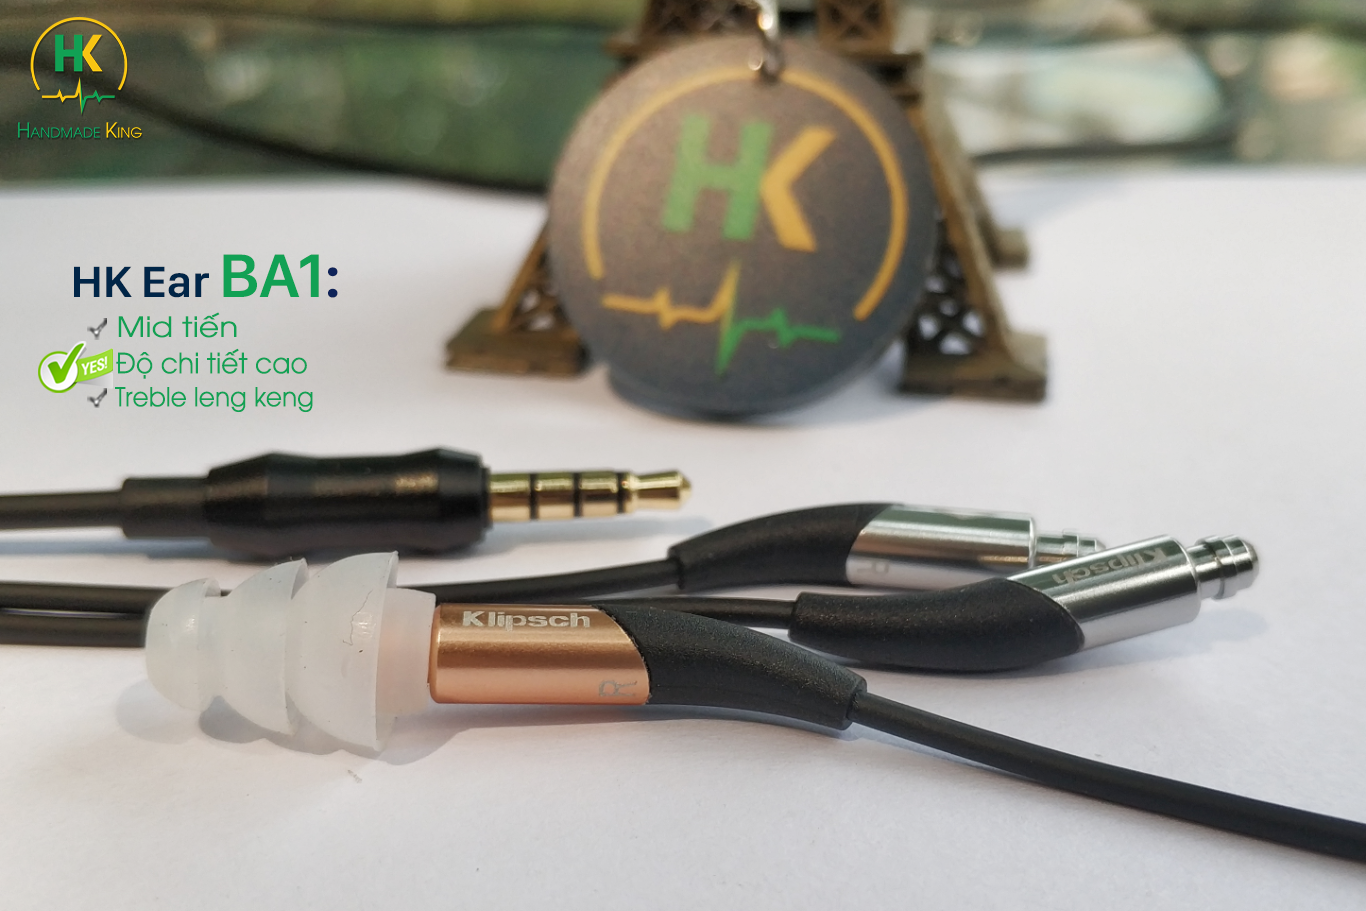 Đánh giá tai nghe DIY HK Ear BA1 của Handmade King